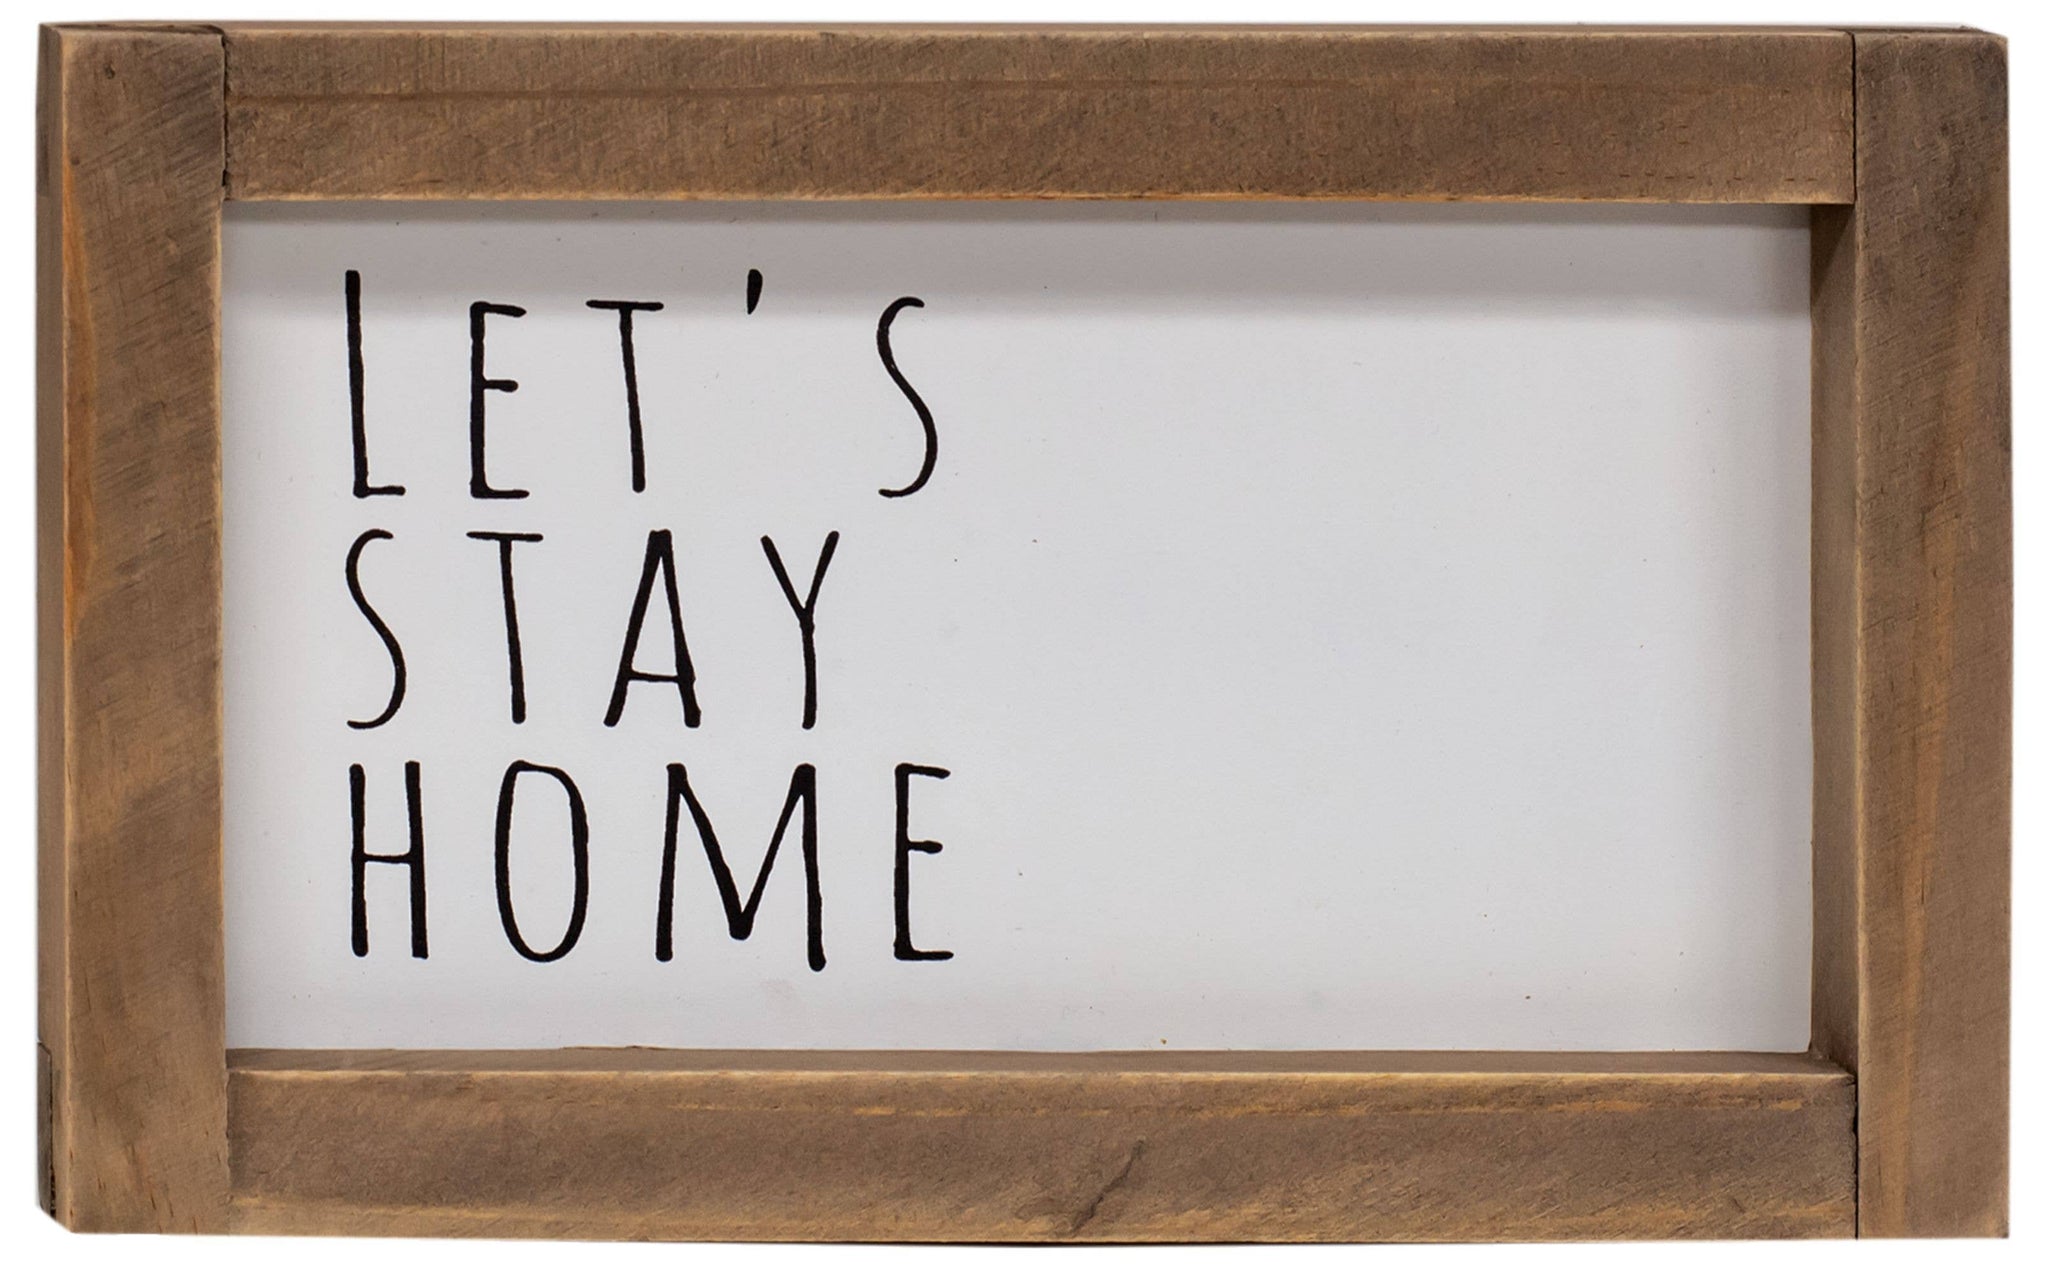 Let's Stay Home Framed Sign